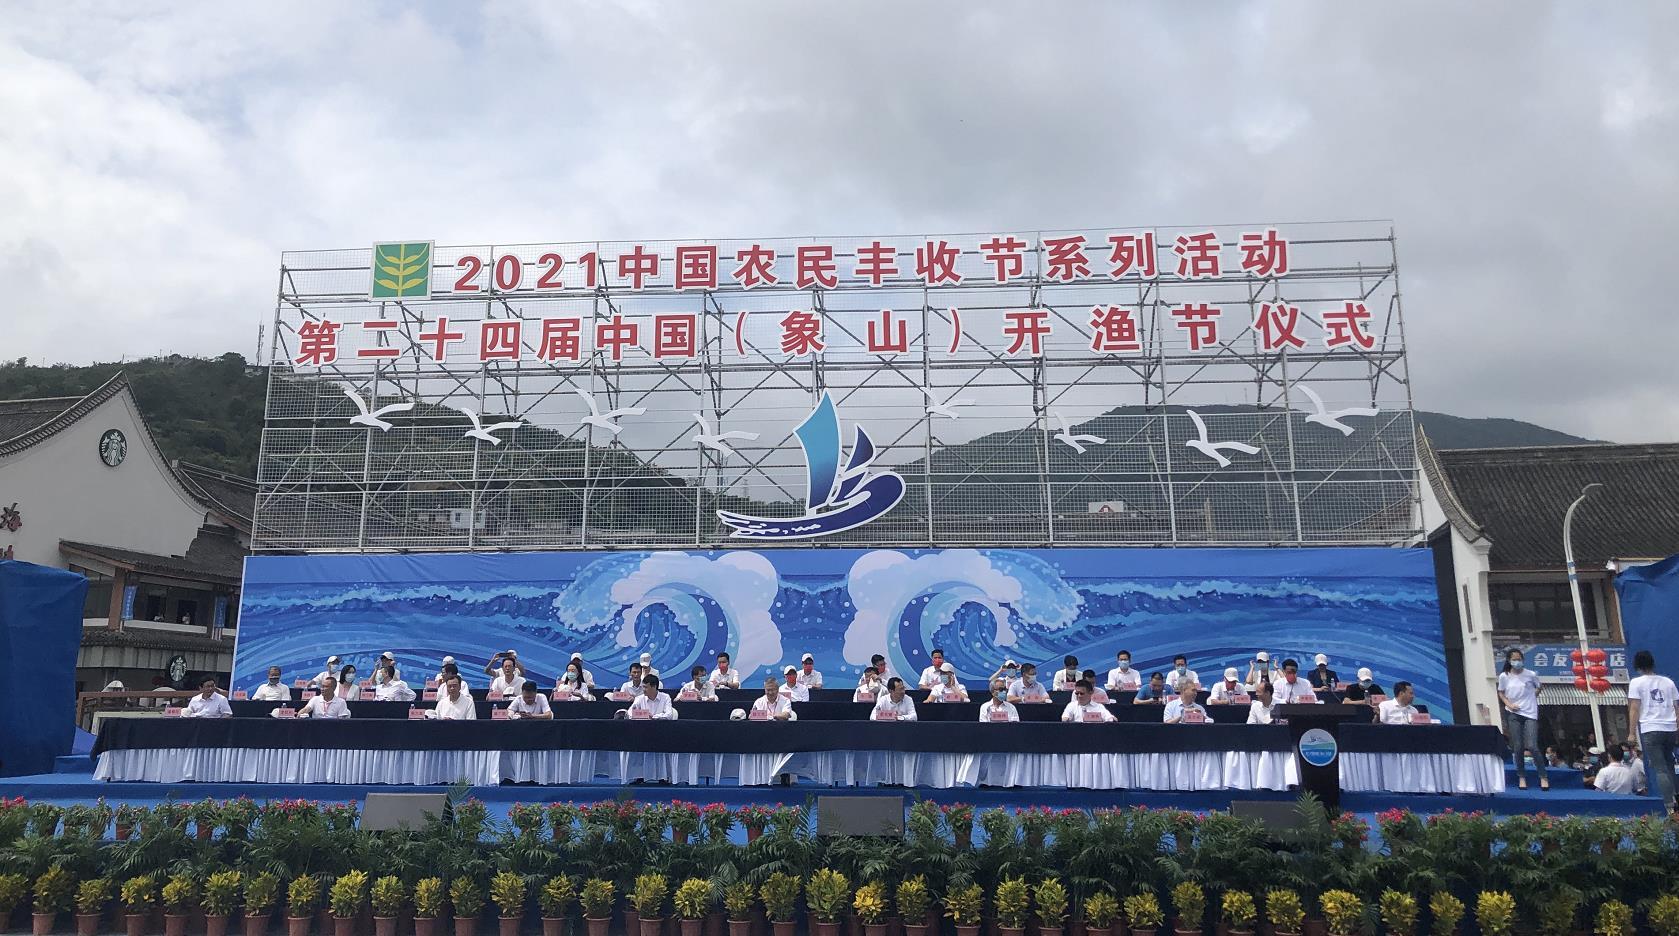  第二十四届中国（象山）开渔节隆重举行  千舟竞发